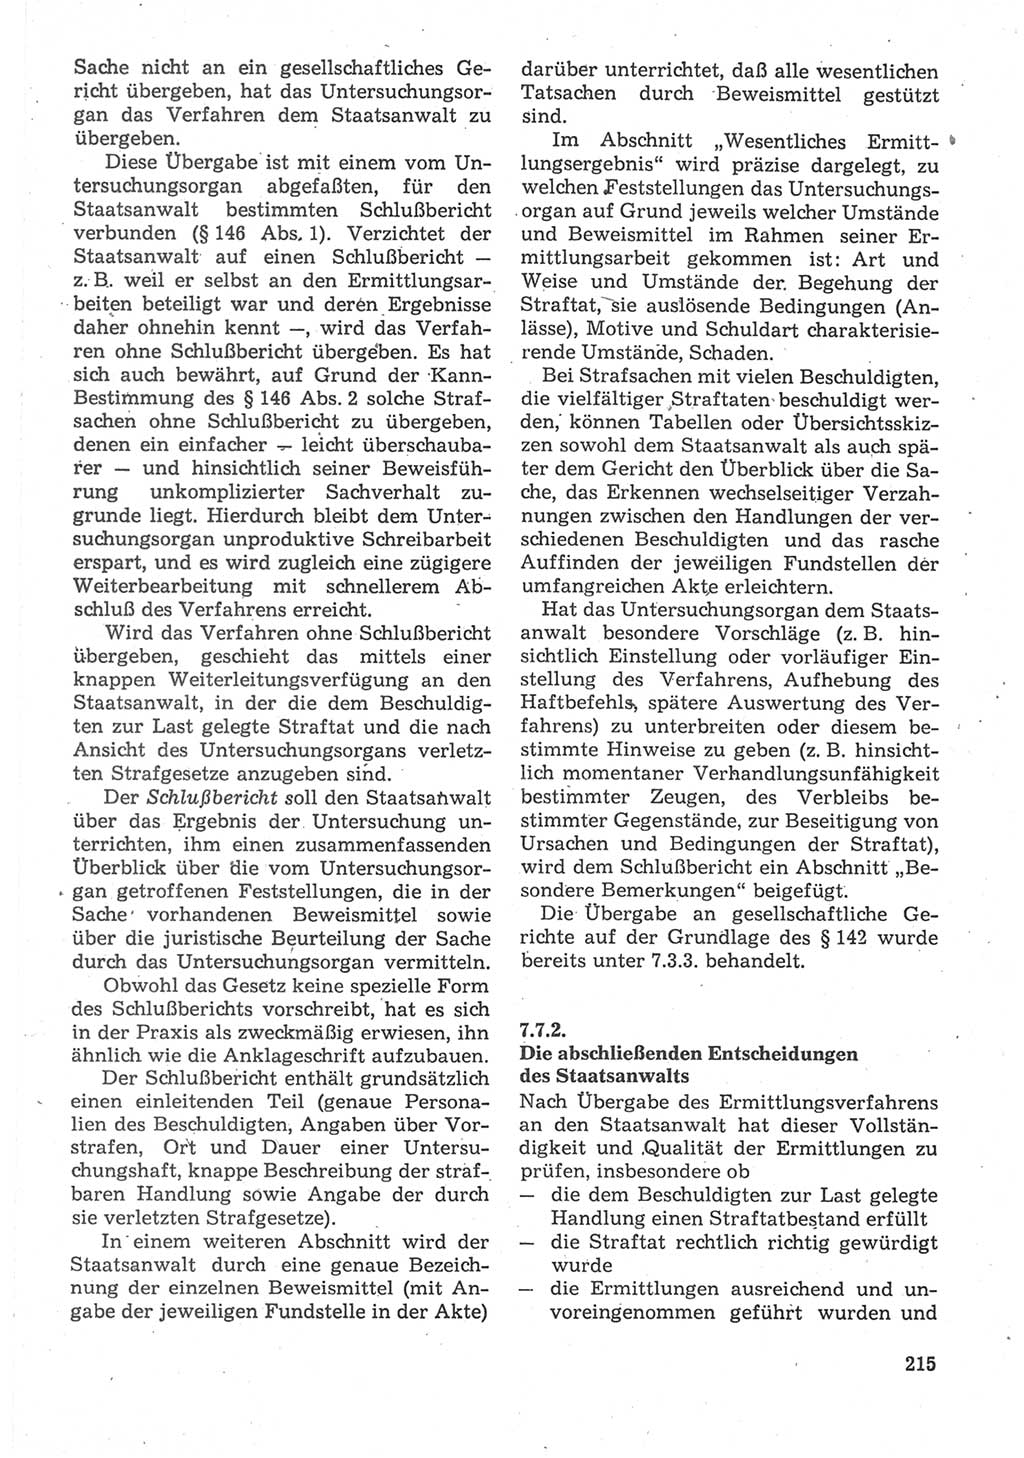 Strafverfahrensrecht [Deutsche Demokratische Republik (DDR)], Lehrbuch 1987, Seite 215 (Strafverf.-R. DDR Lb. 1987, S. 215)